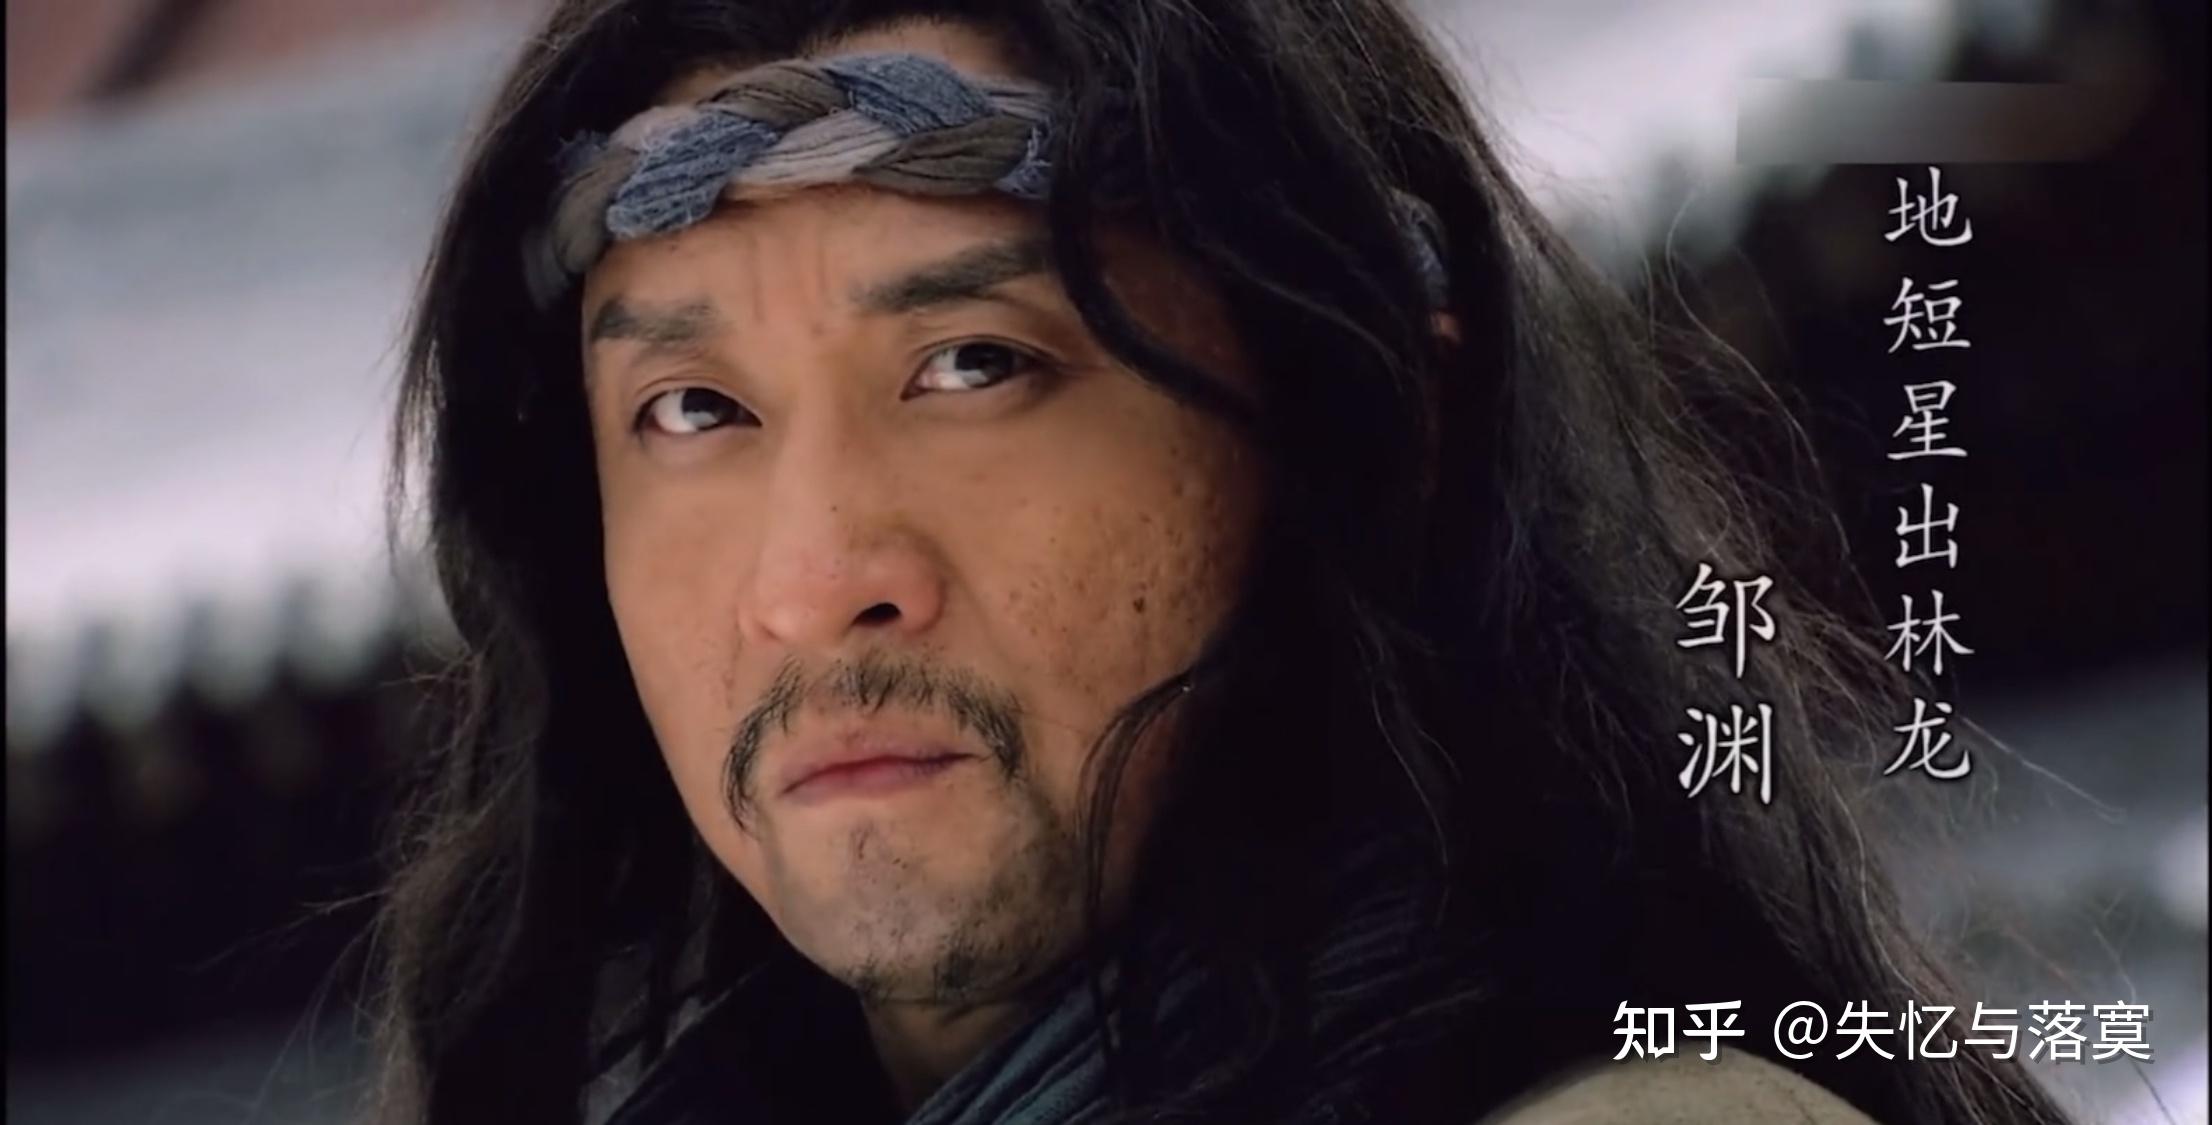 《水浒传》地短星 出林龙 邹渊莱州人士,原是登云山的寨主,是邹润的